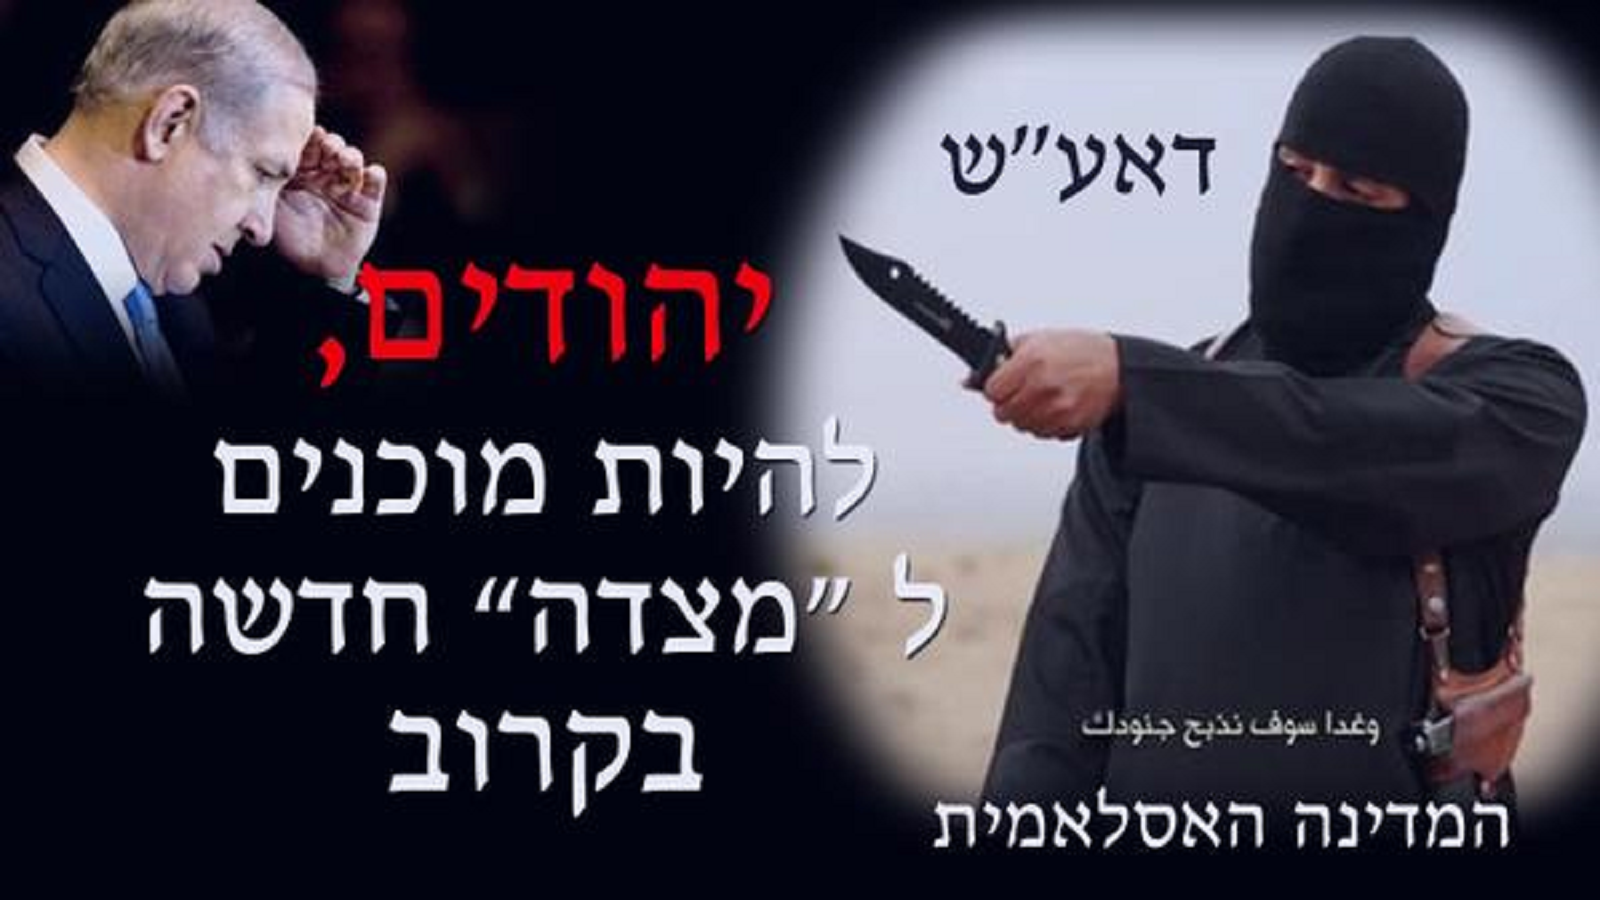 إسرائيل تستغل تهديدات "داعش"..لتصفية فلسطيني الداخل